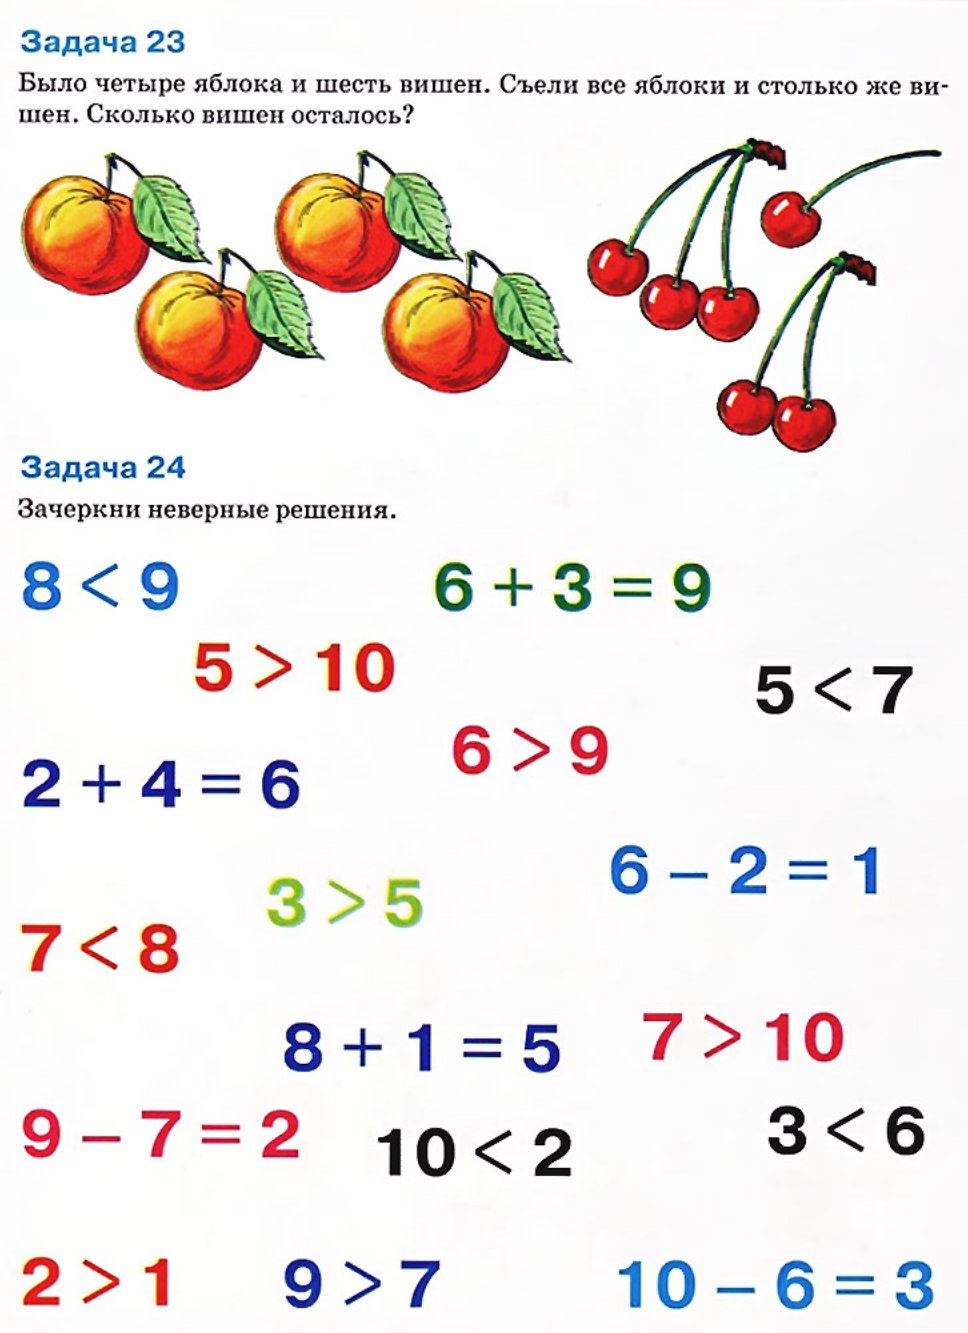 Математика летом 1 класс. Логические задачи для дош. Задачки на логиау для детеф. Залачки на логику для детей. Задачачи по математике для дошкольников.